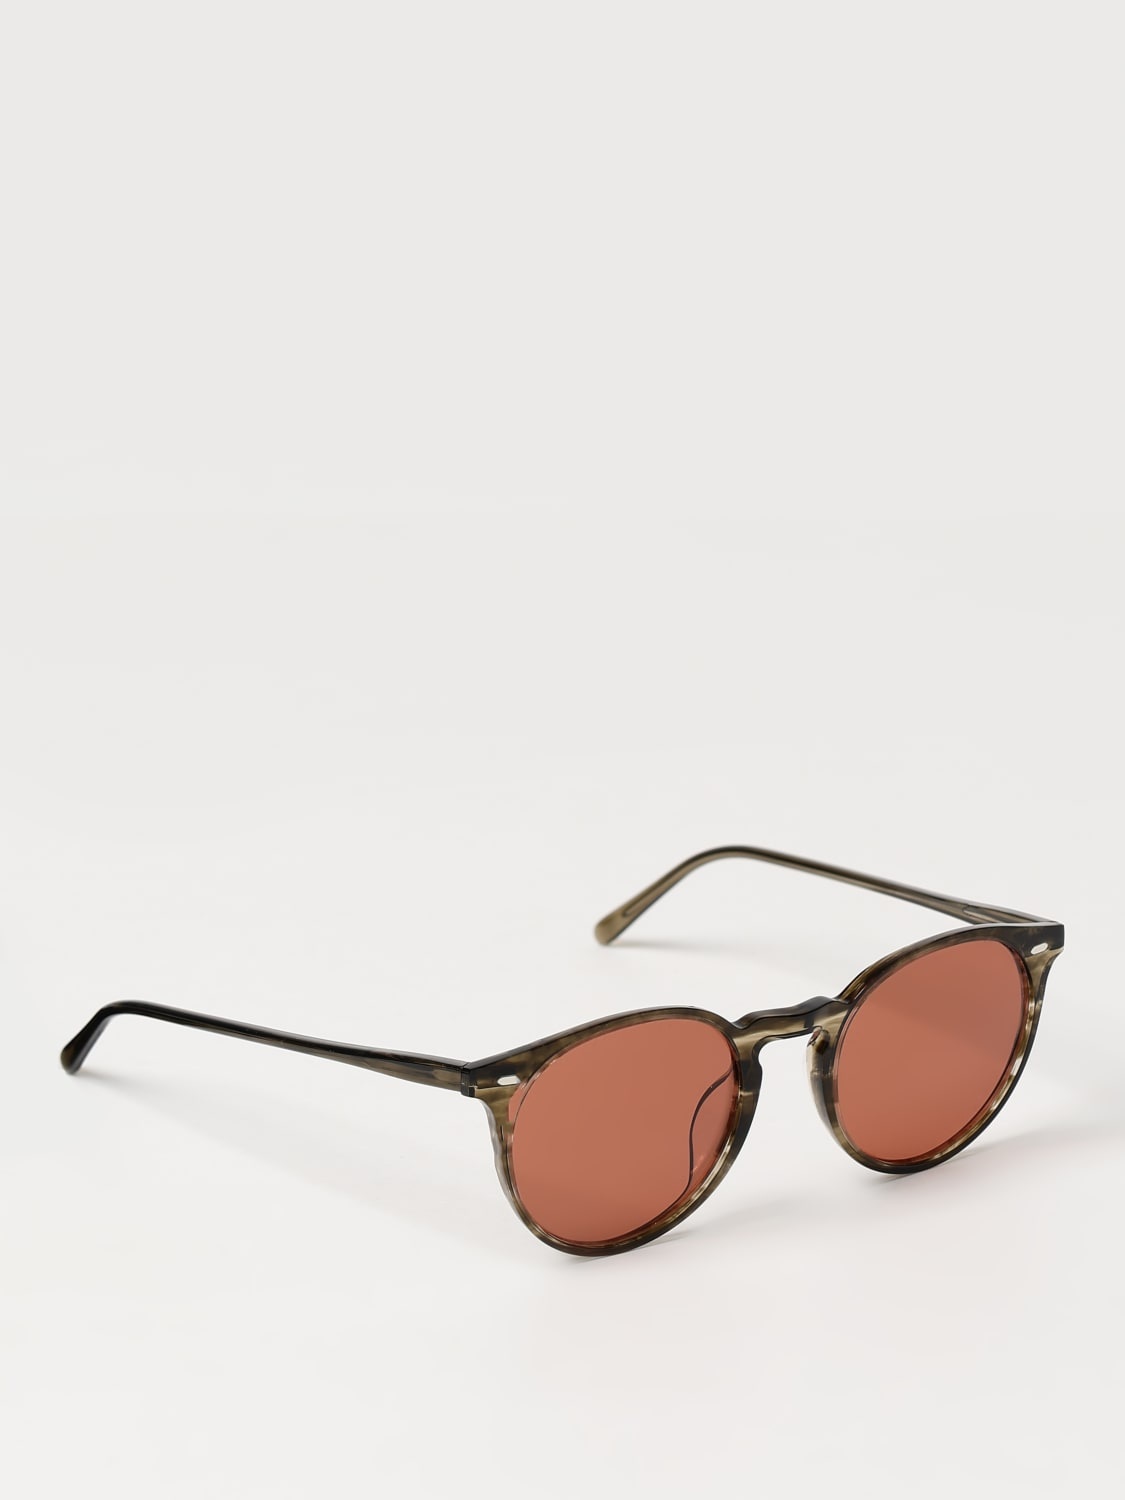 Sunglasses men Oliver Peoples - 1